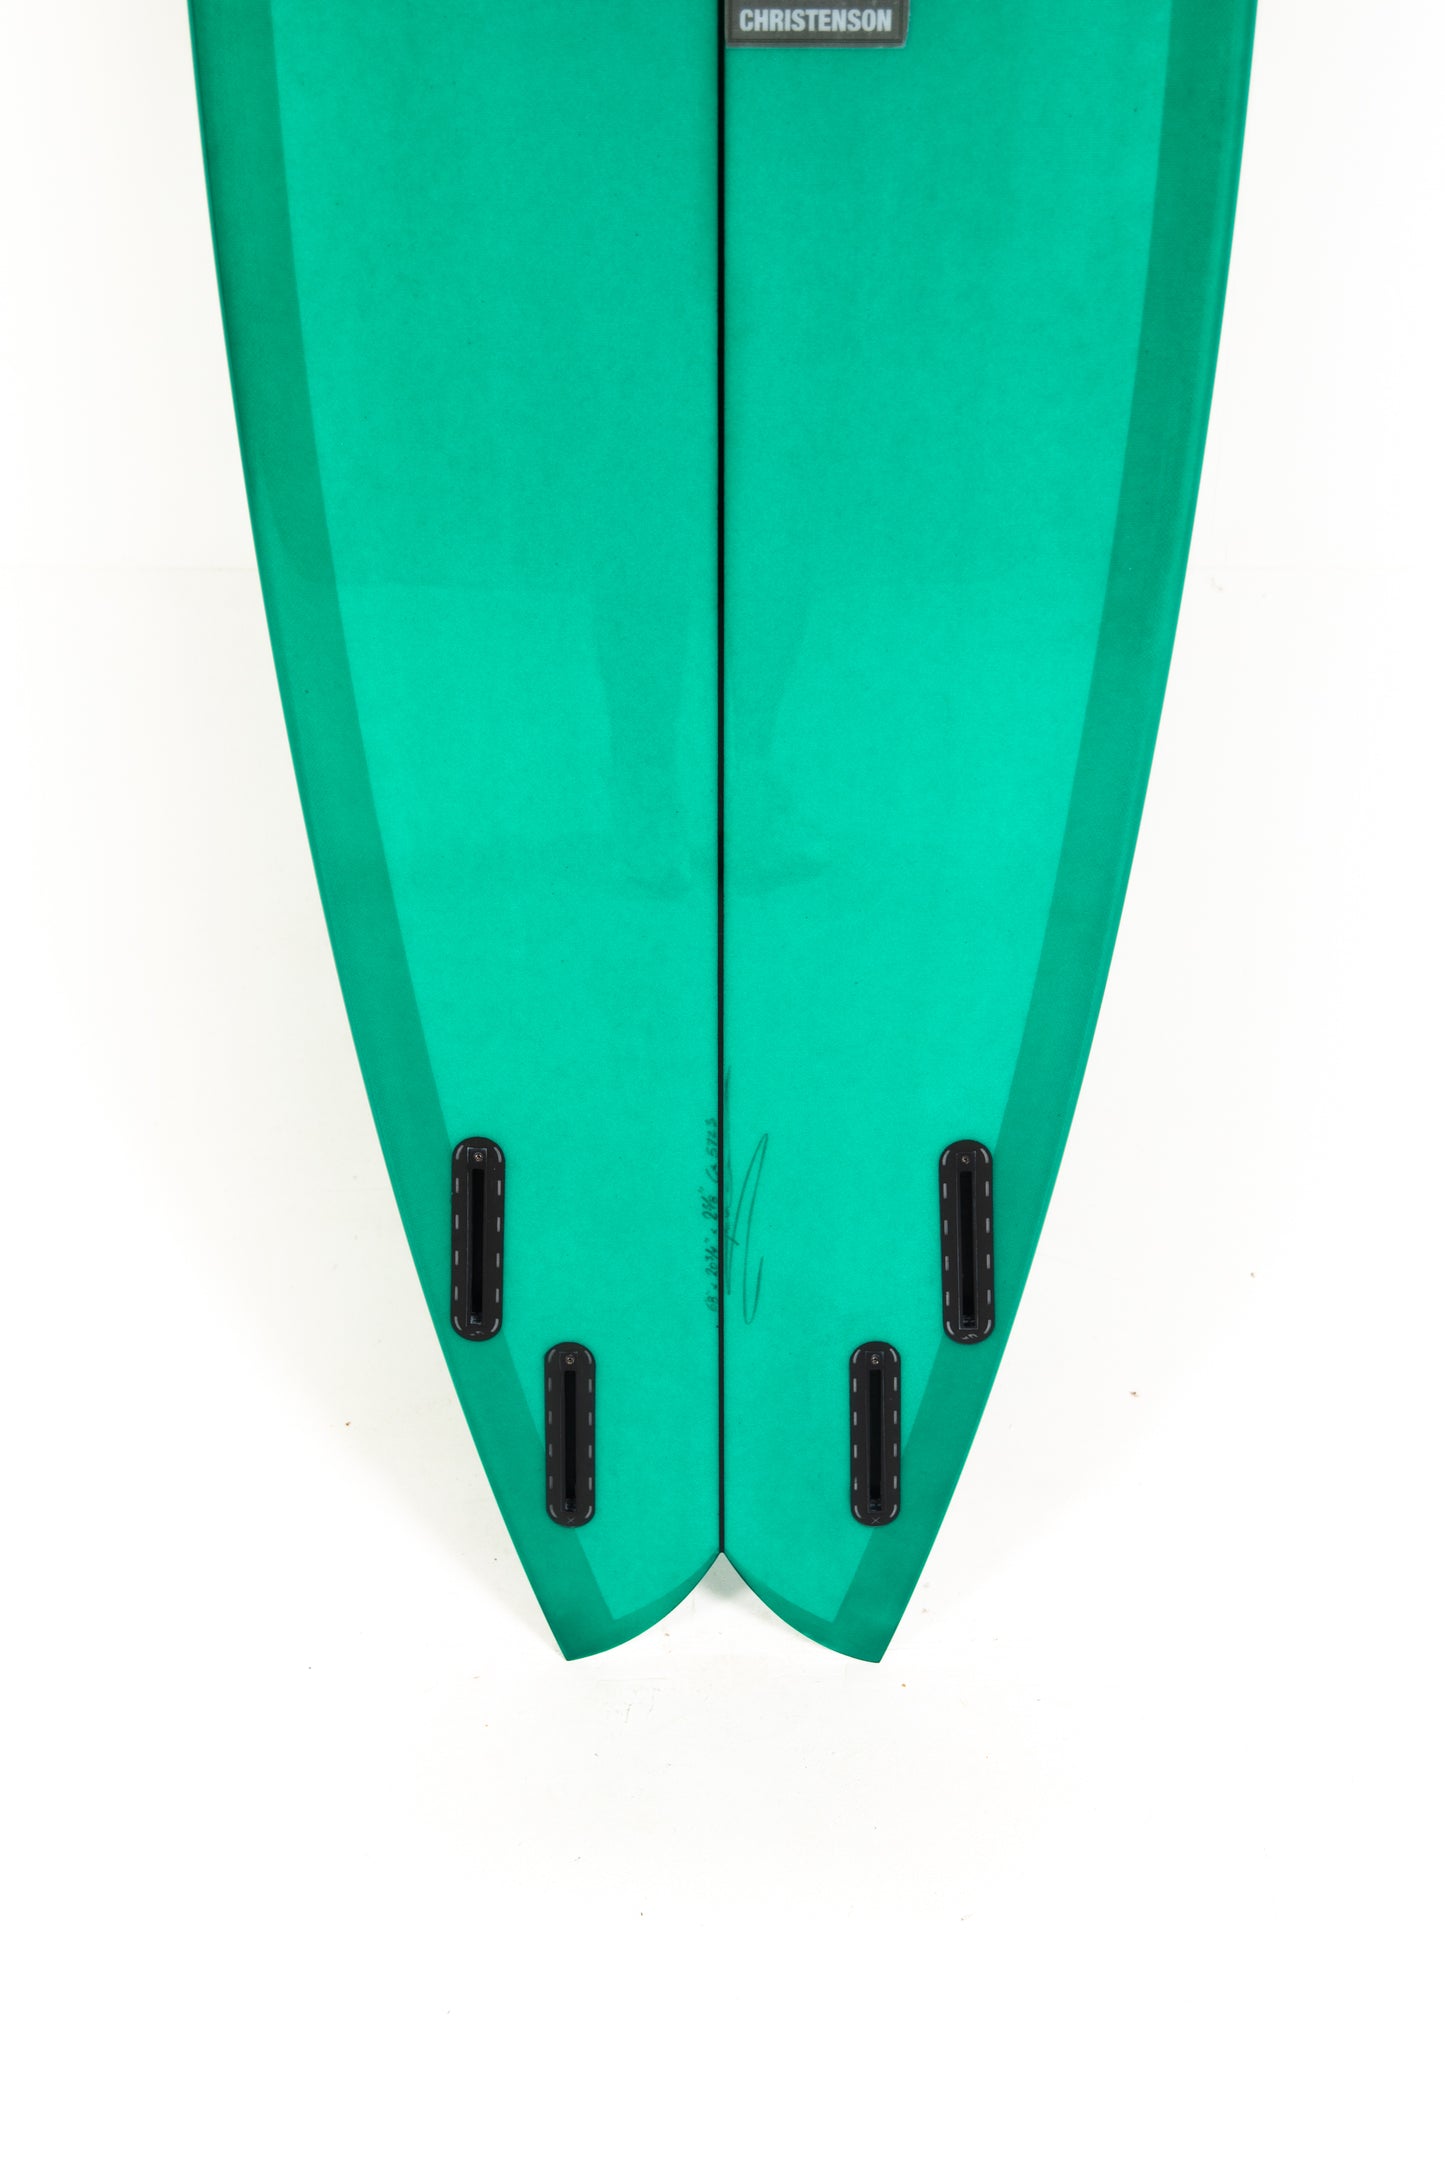 
                  
                    Pukas Surf Shop- Christenson Surfboards - NAUTILUS - 6'8" x 20 3/4 x 2 5/8 - CX05723
                  
                